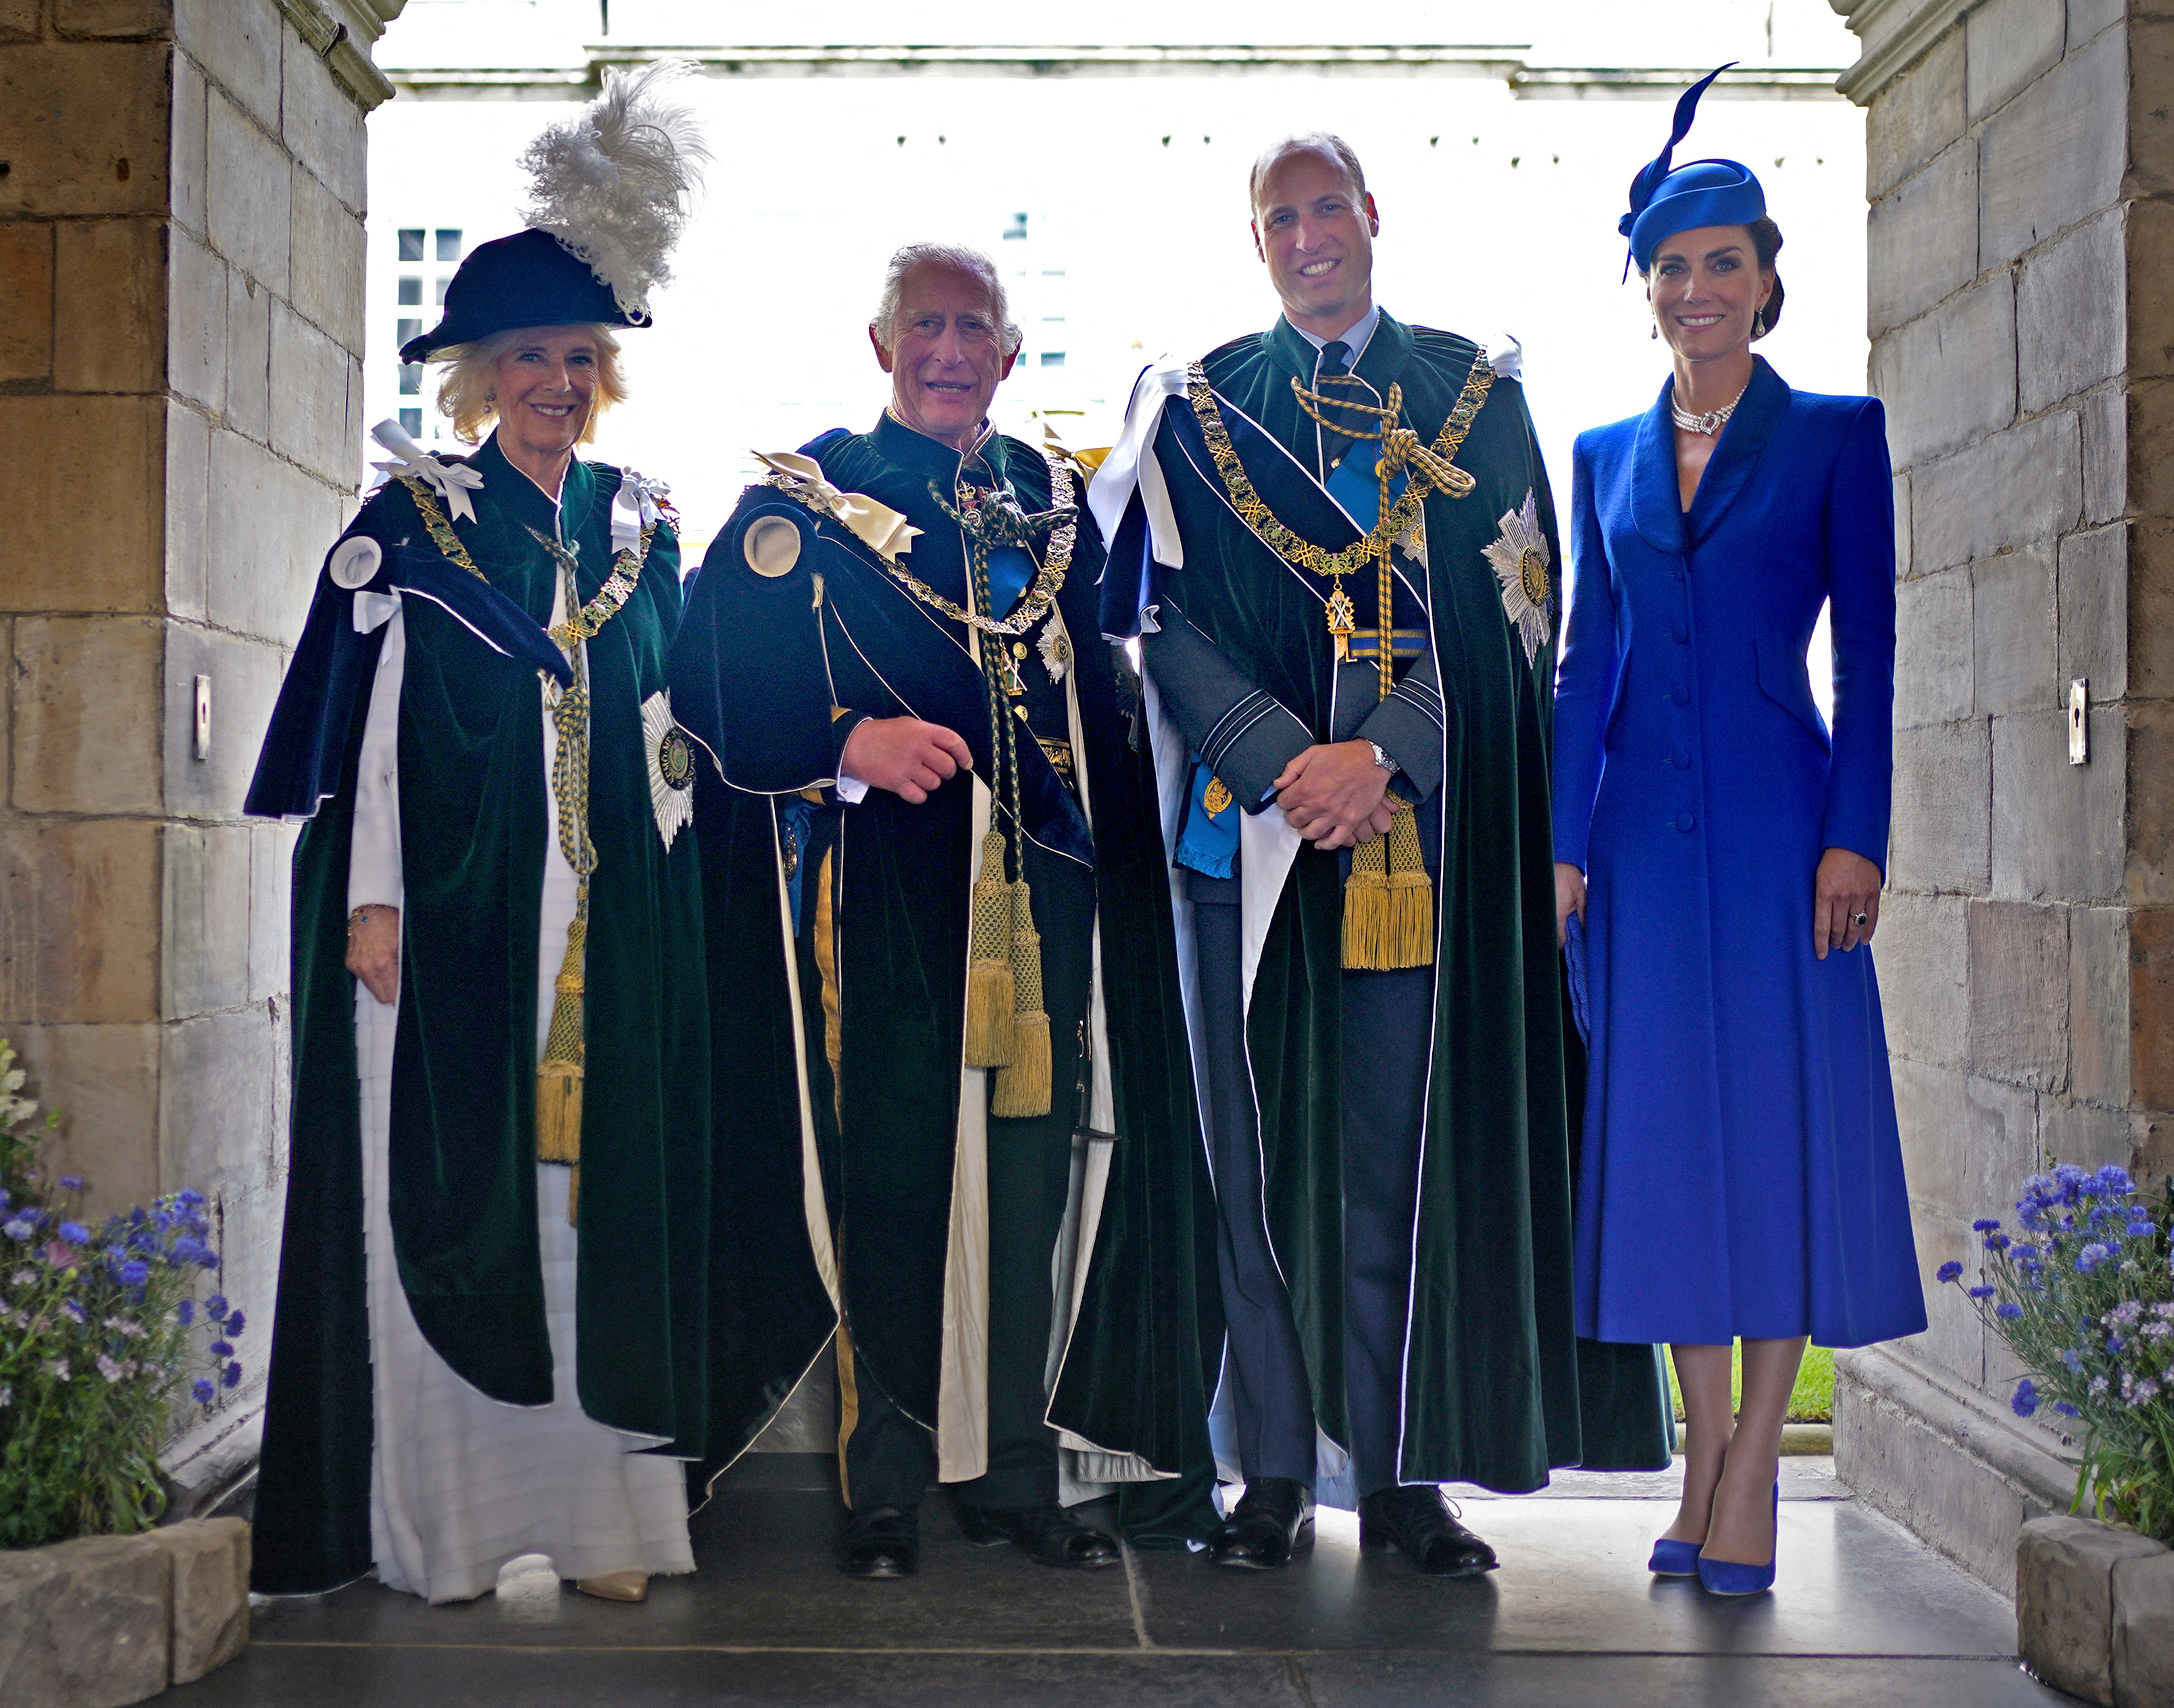 Reina Camilla, el rey Charles III, el príncipe William y la princesa Catherine después de ver un pase aéreo del equipo acrobático de la Real Fuerza Aérea Británica (RAF) desde el Palacio de Holyroodhouse, en Edimburgo, el 5 de julio de 2023 | Foto: Getty Images